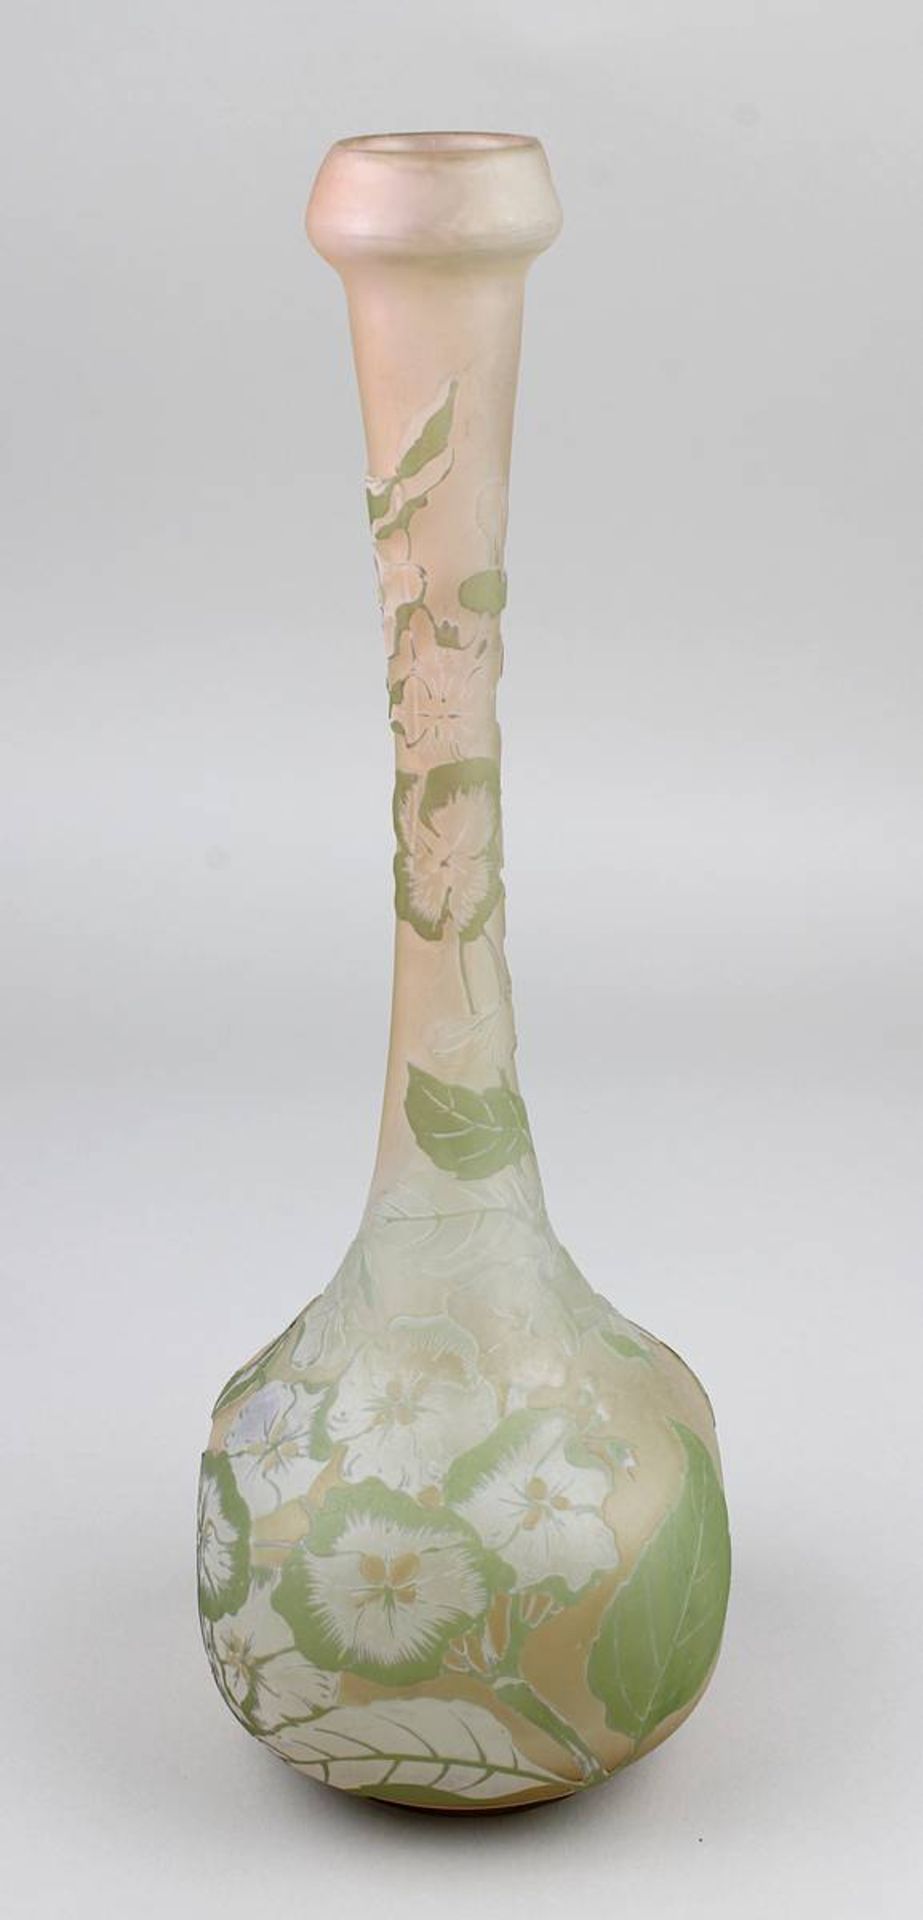 Gallé Jugendstil-Vase mit Hortensiendekor, Nancy 1904-06, vierpassiger Vasenbau mit langgezogenem - Image 2 of 5